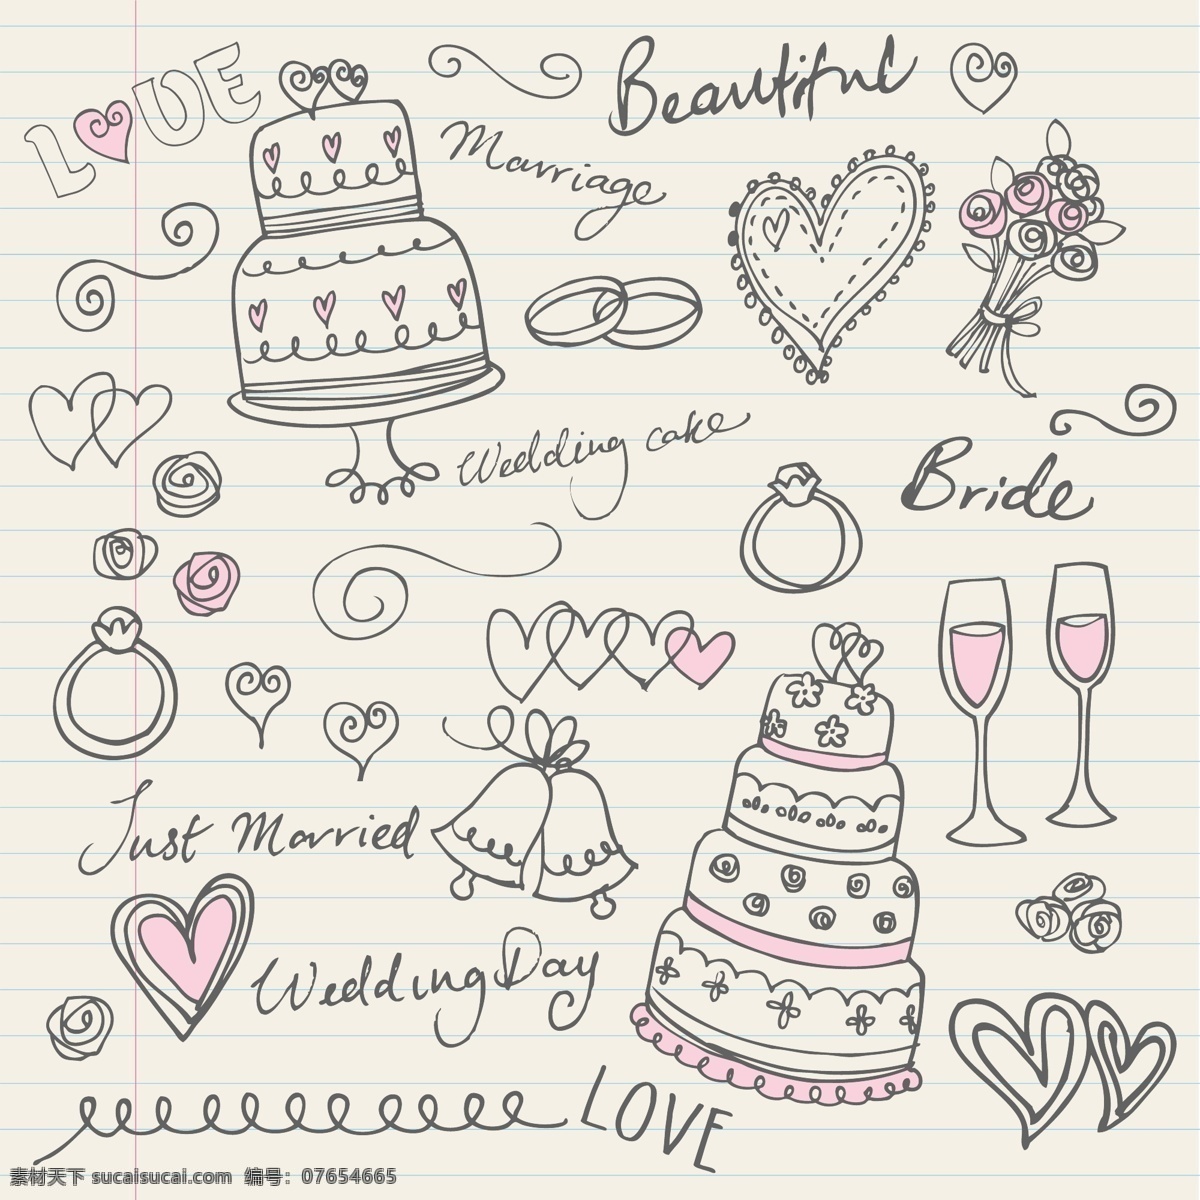 手绘 婚礼 插画 矢量 模板 蛋糕 酒杯 花纹 结婚 婚礼背景 其它节 节日素材 矢量素材